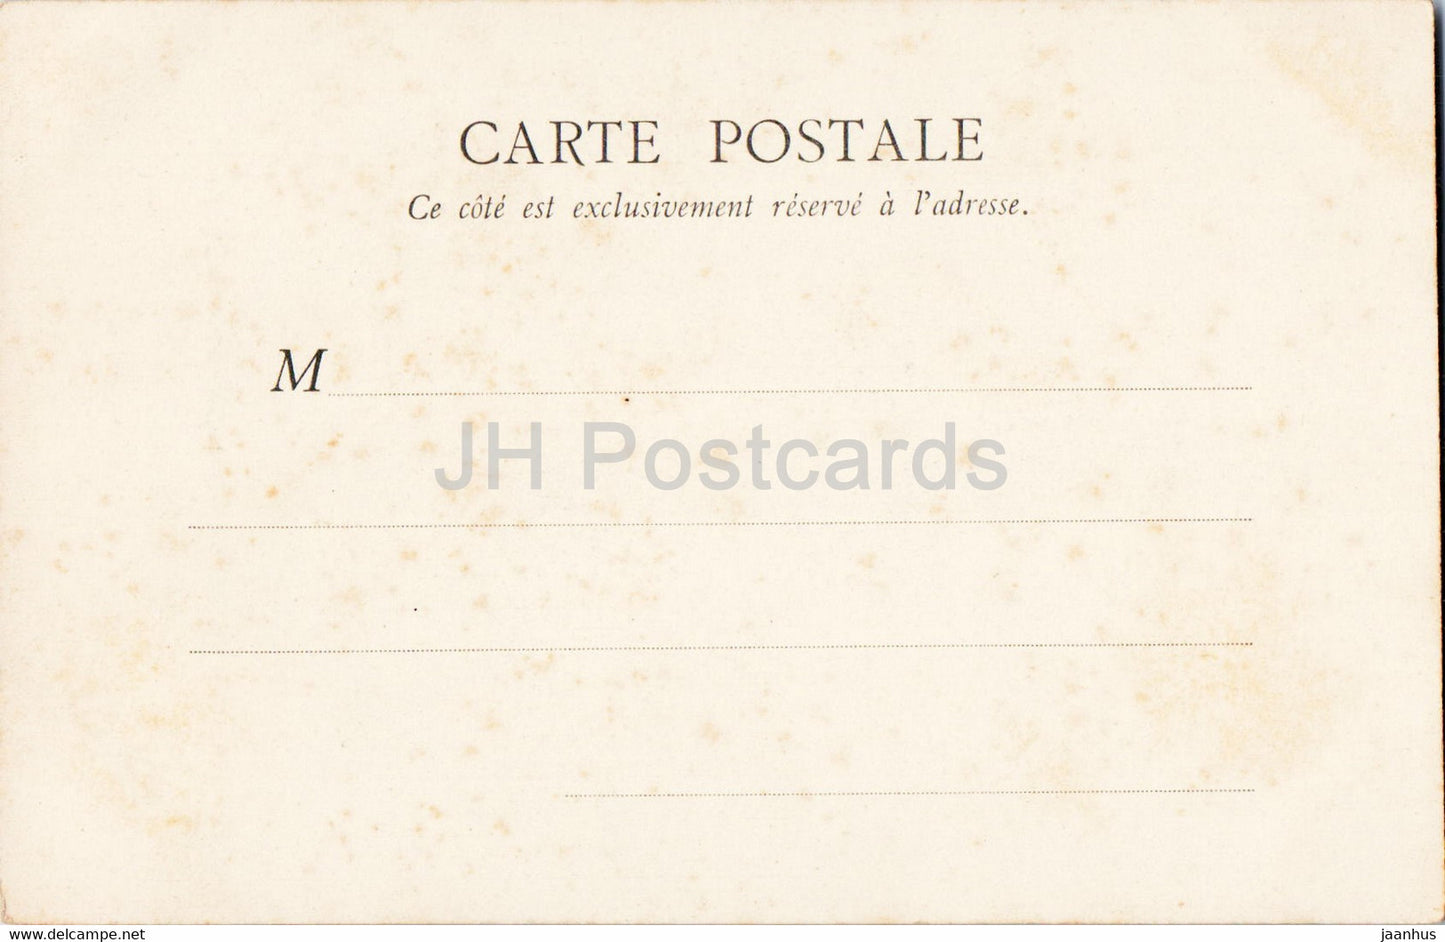 Amiens - Kathedrale - La Facade de cote avec fleche - Kathedrale - 52 - alte Postkarte - Frankreich - unbenutzt